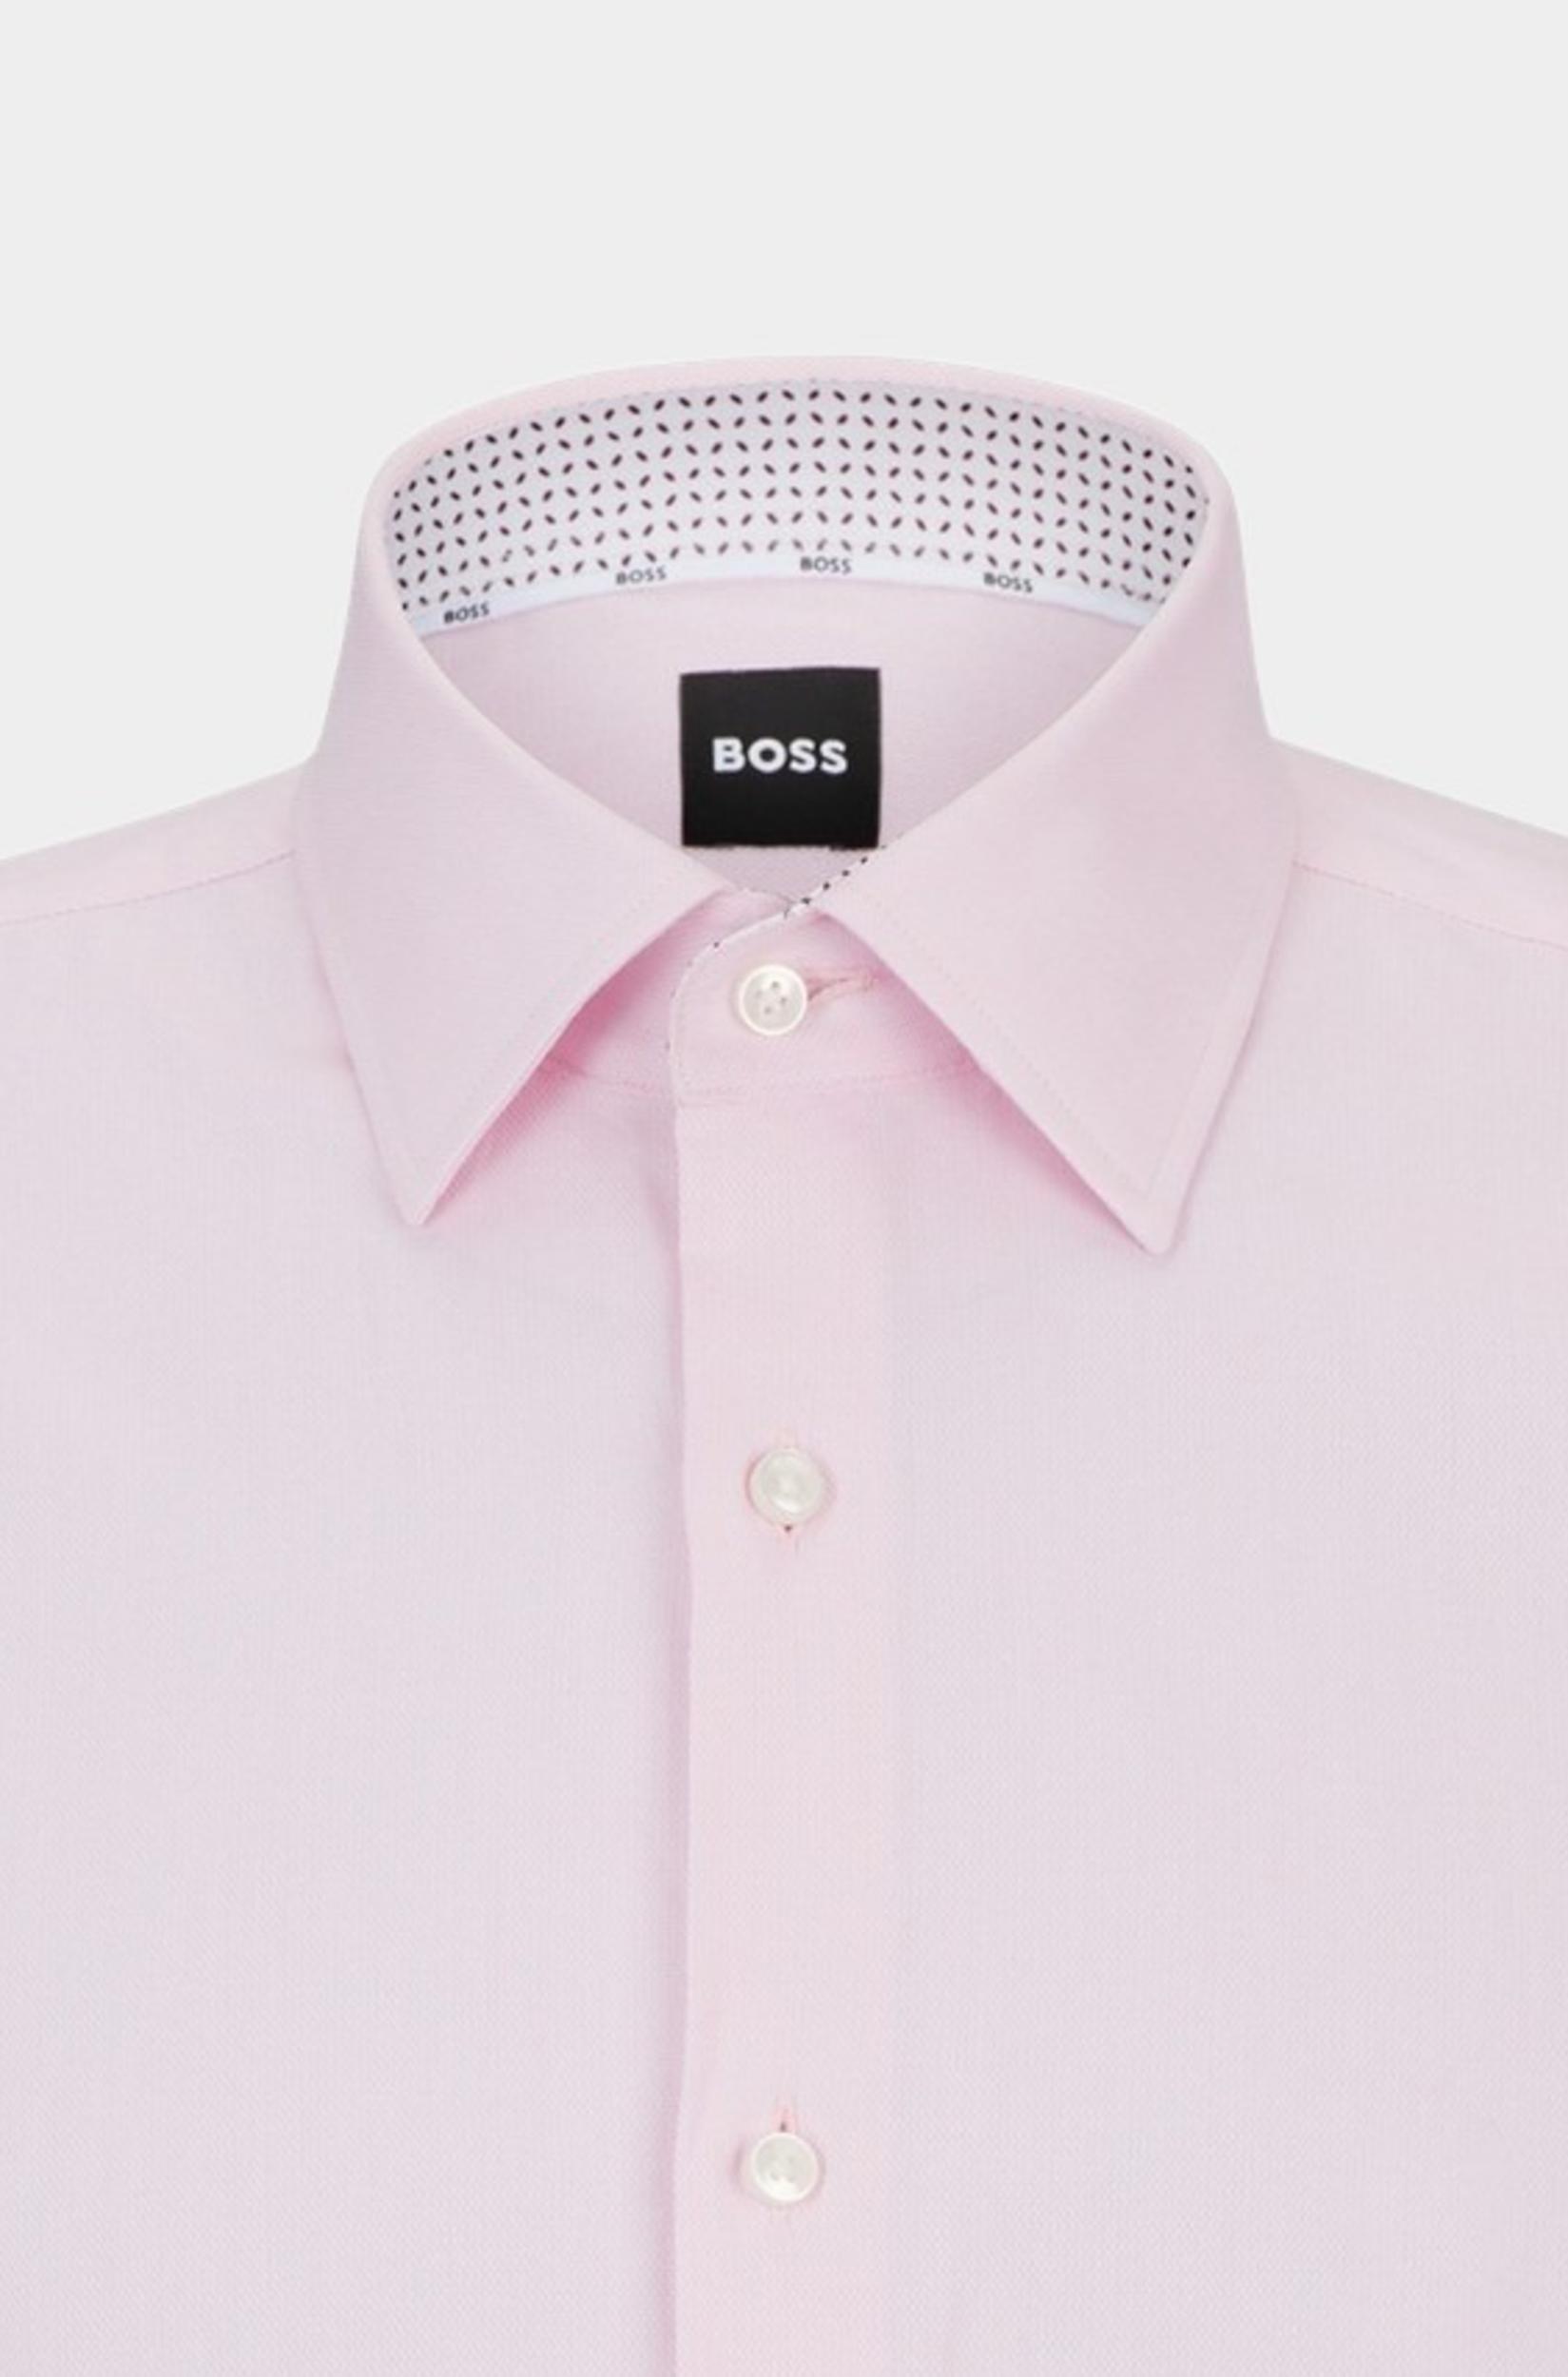 BOSS Black Business hemd lange mouw Roze H-JOE-kent-C3-214 10256714 01 50508772/688